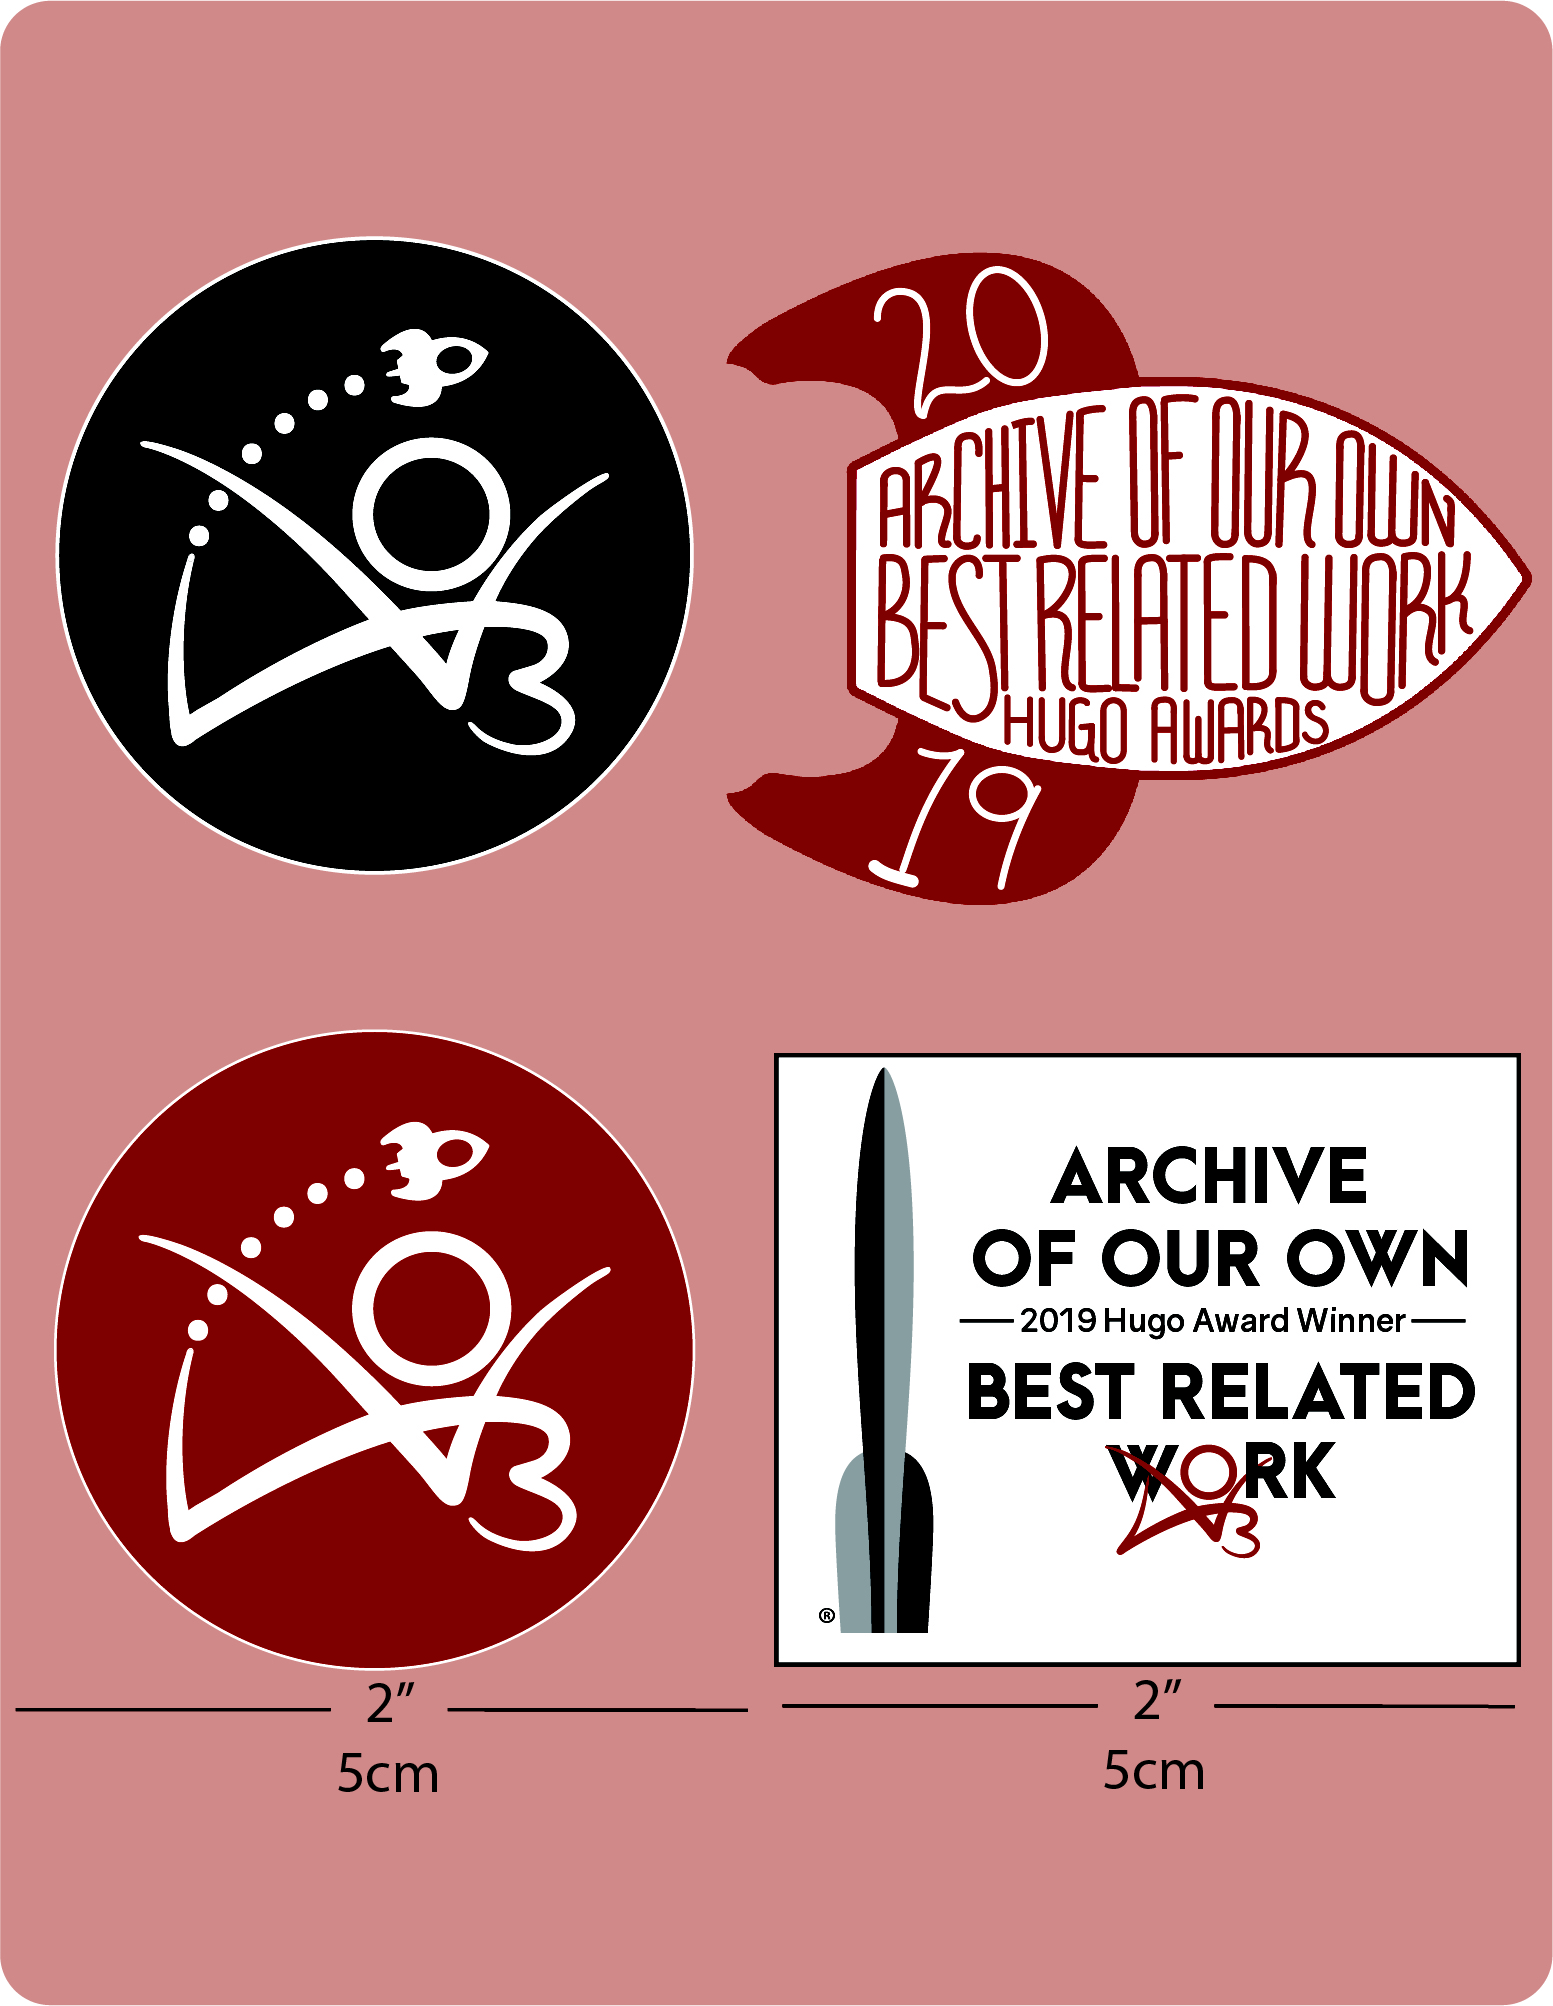 Set de stickers de los Premios Hugo (set de cuatro stickers de 5 cm). Los primeros dos son circulares, con un pequeño cohete volando sobre el logo del AO3.(1) es rojo y (2) es negro. (3) Un rectángulo con el logo del premio Hugo al lado de las palabras "Archive of Our Own - 2019 Hugo Award Winner - Best Related Work" y (4) es un cohete estilizado con las palabras "Archive of Our Own, Best Related Work, Hugo Awards" escritas a mano en el cuerpo del cohete y el año "2019" en sus aletas.